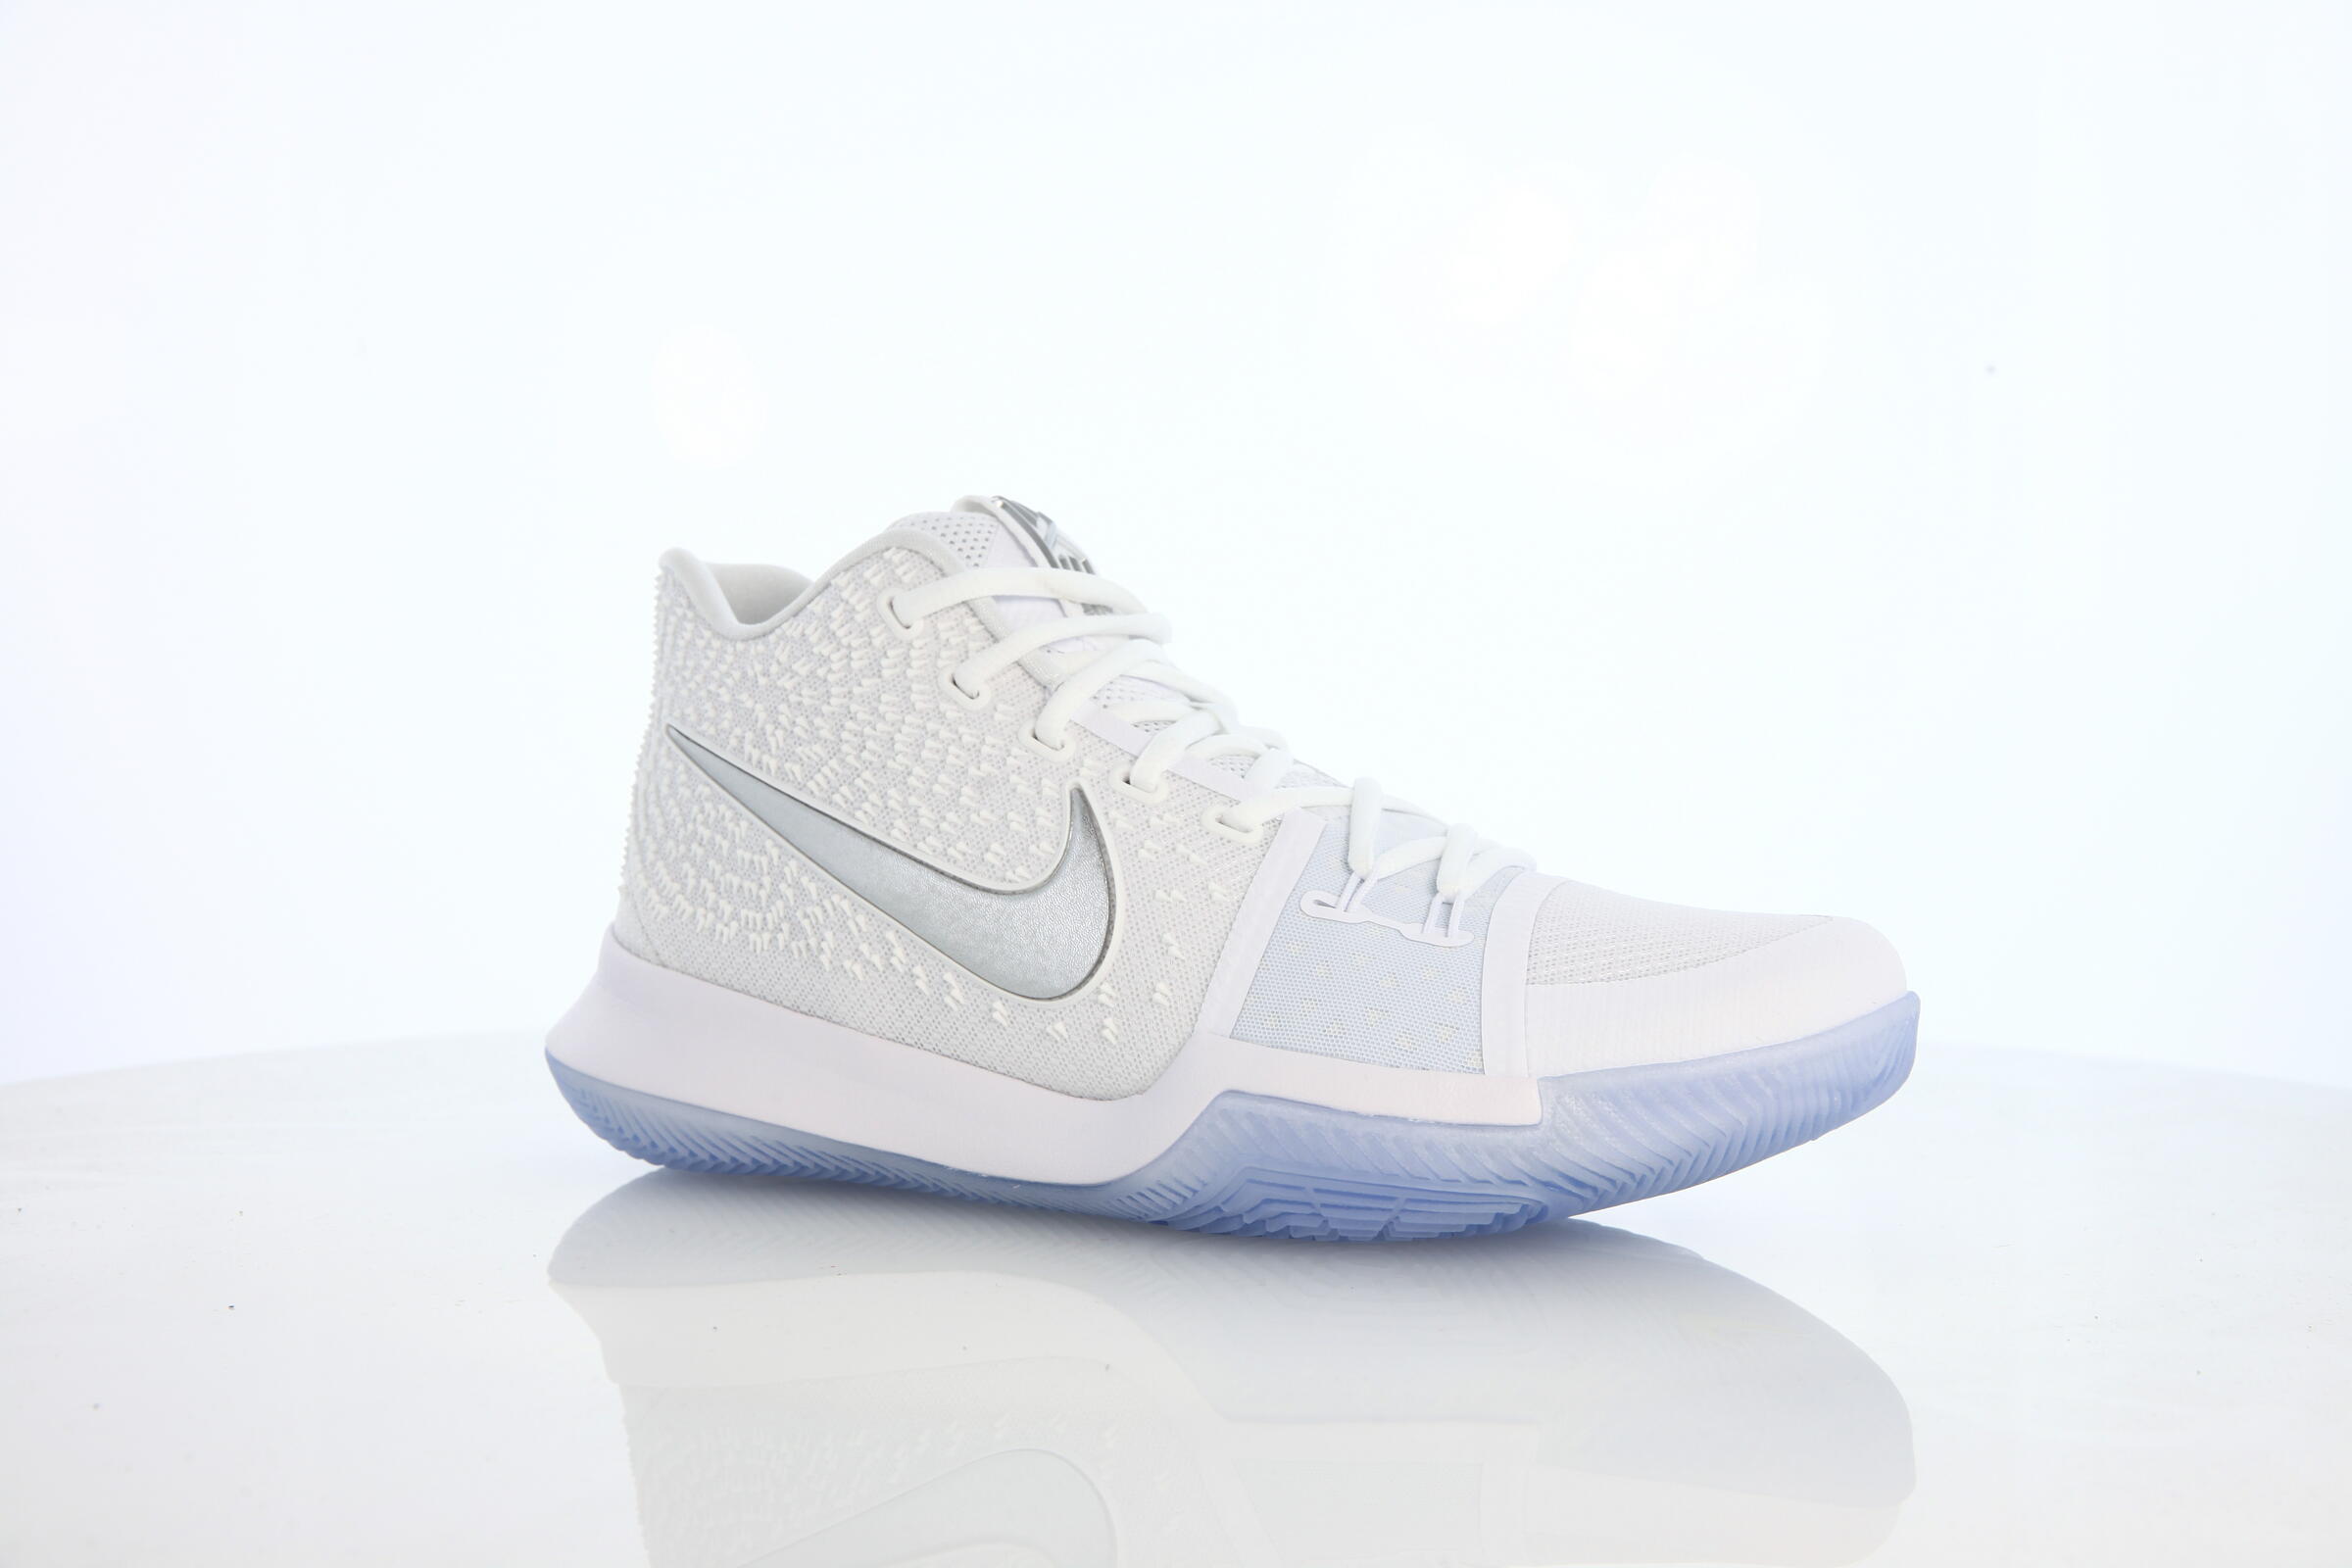 Nike Kyrie 3 "White"